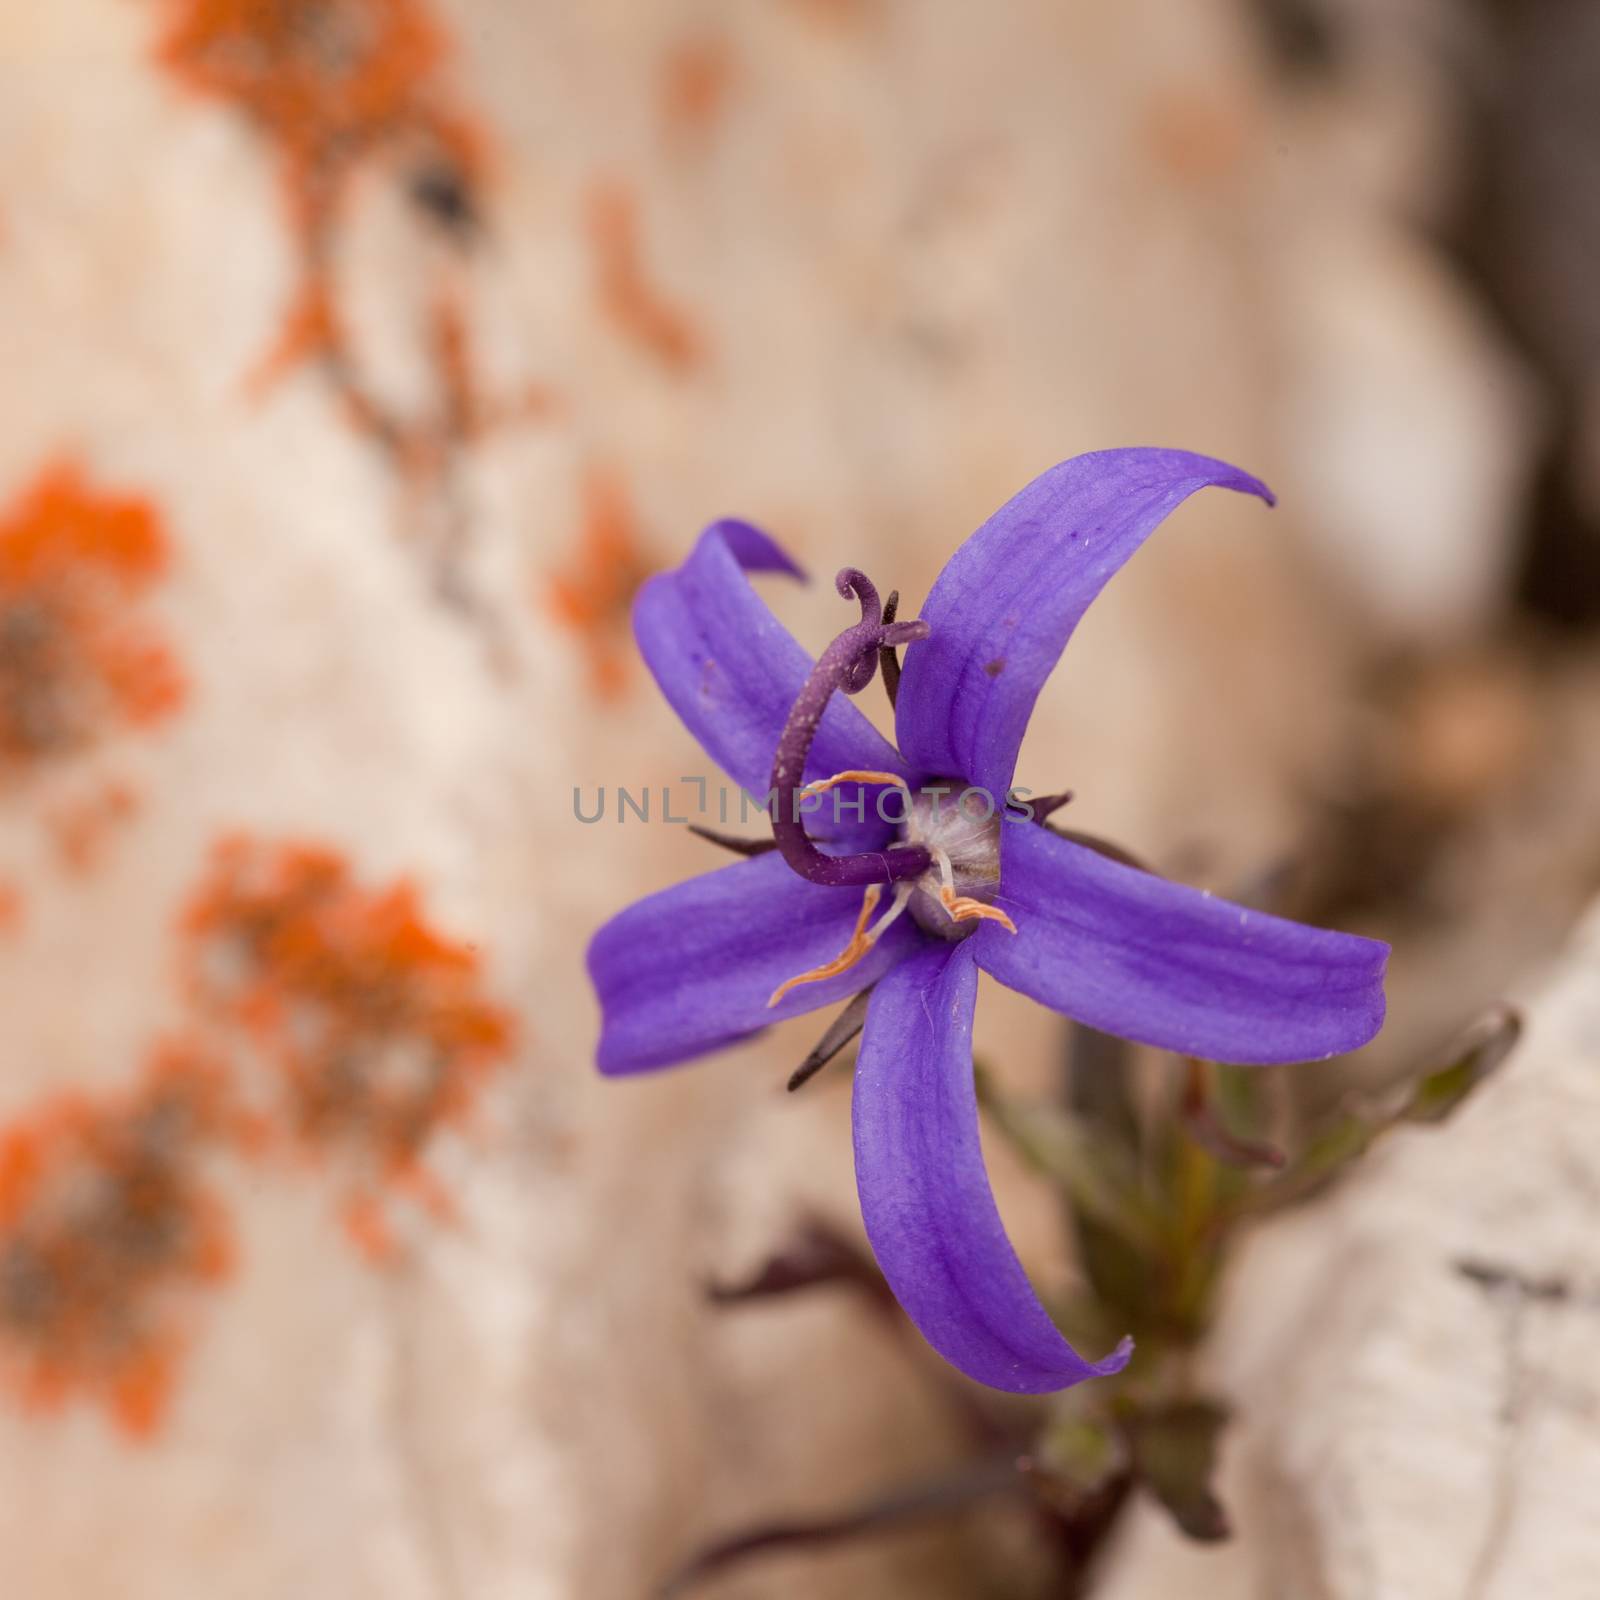 Wide open deep blue flower of Inky Gentain, Gentiana glauca, growing between rocks in alpine habitat